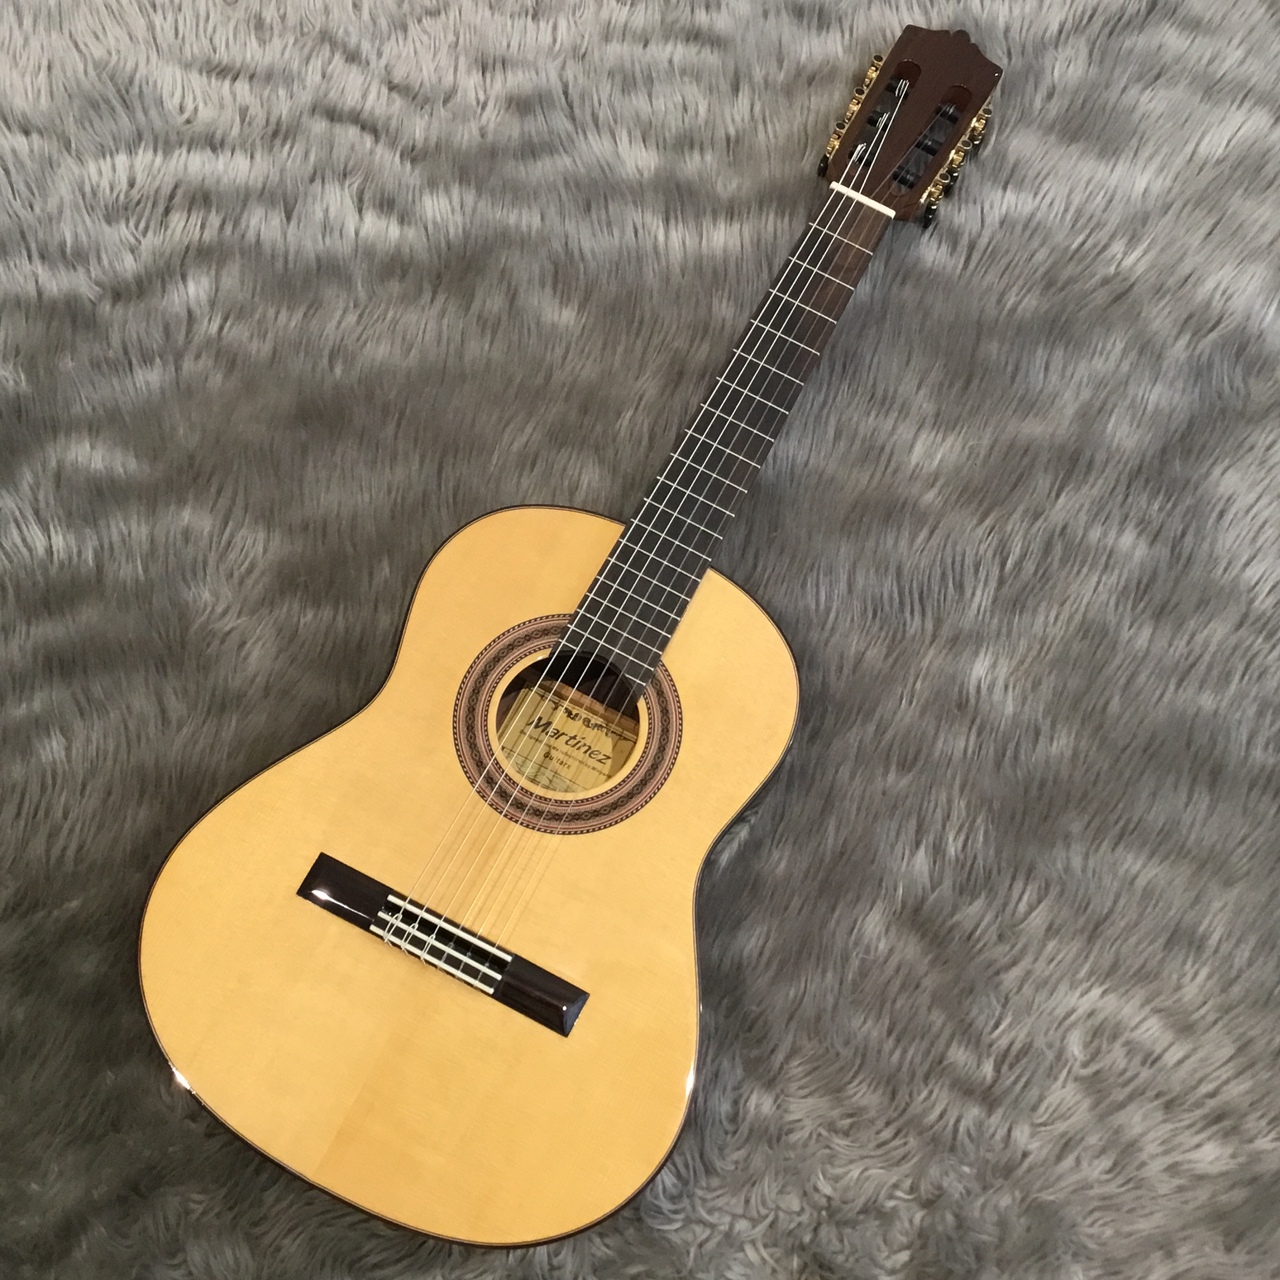 Martinez (マルチネス)MR-580S/ジュニアギター/トラベルギター/ケース